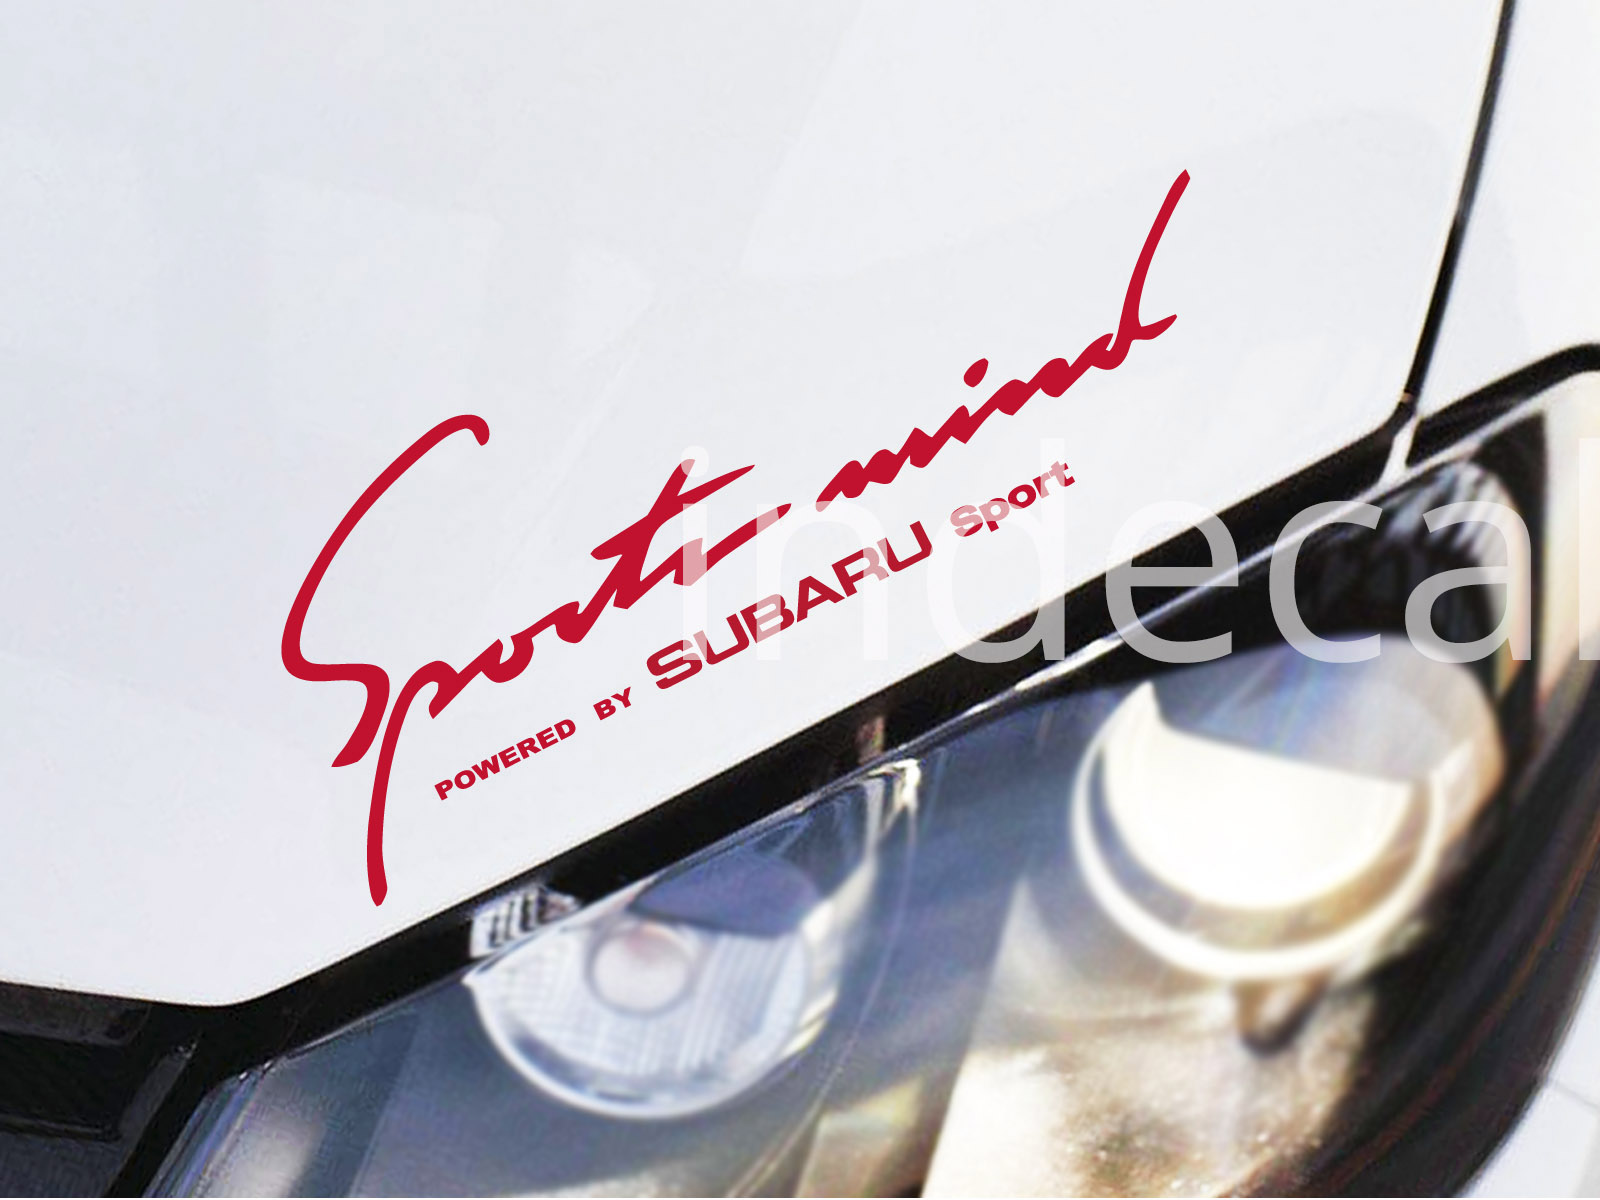 1 x Subaru Sports Mind Sticker - Red